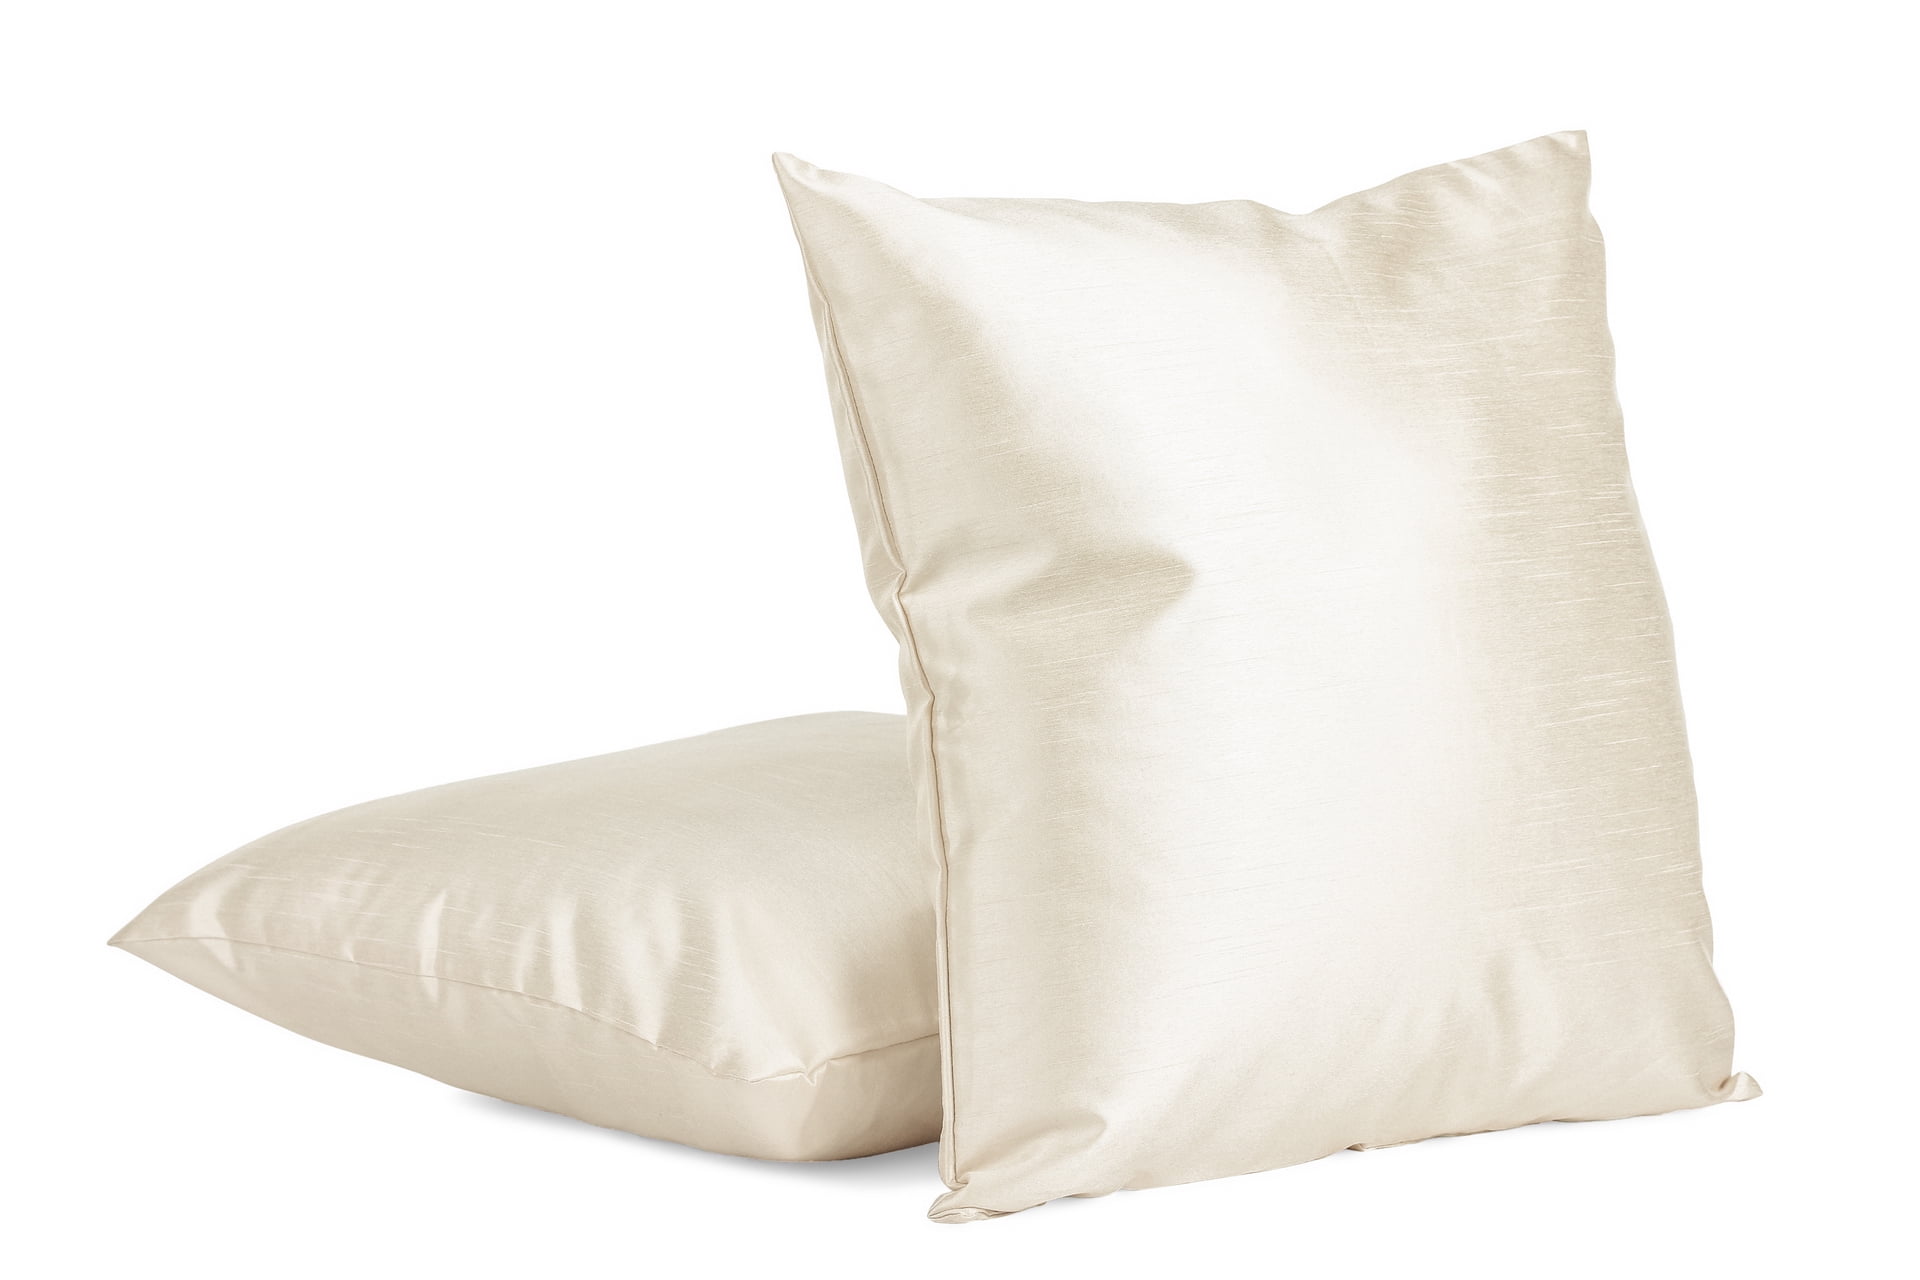 Super Luxury Soft Pillow Cases-Black 18x18inch Linen Clubs 2PACK Slub Cotton Throw Pillow Cover/Euro Sham/Cushion Sham